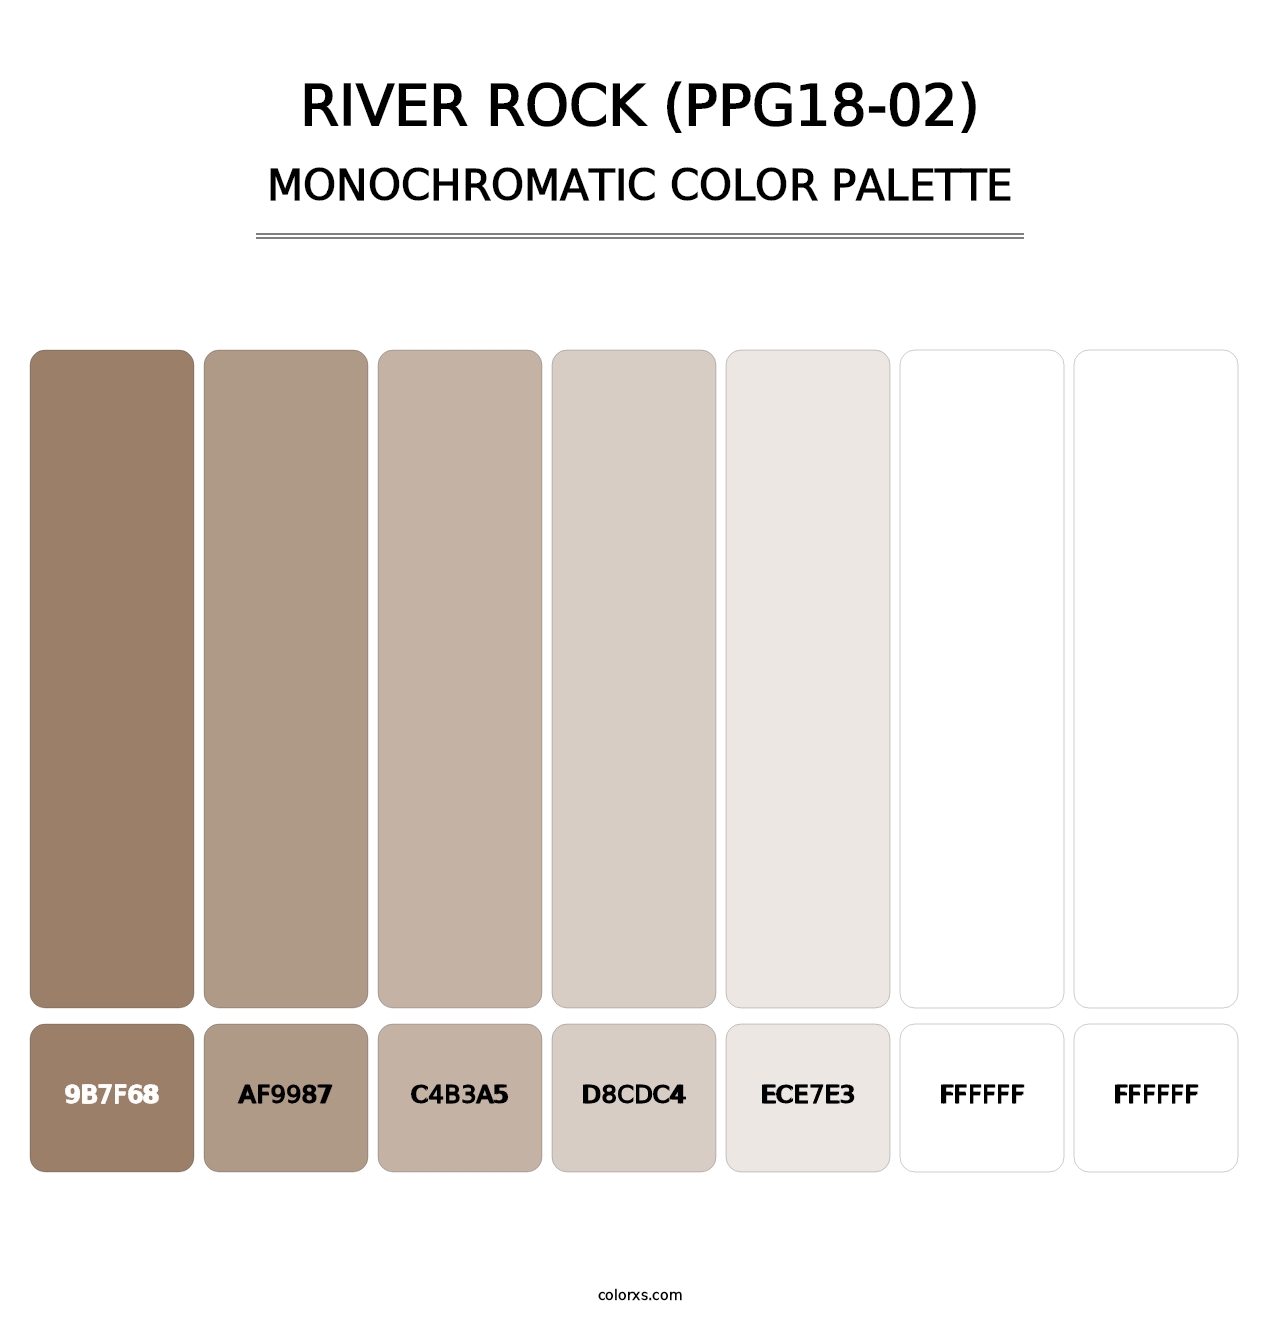 River Rock (PPG18-02) - Monochromatic Color Palette